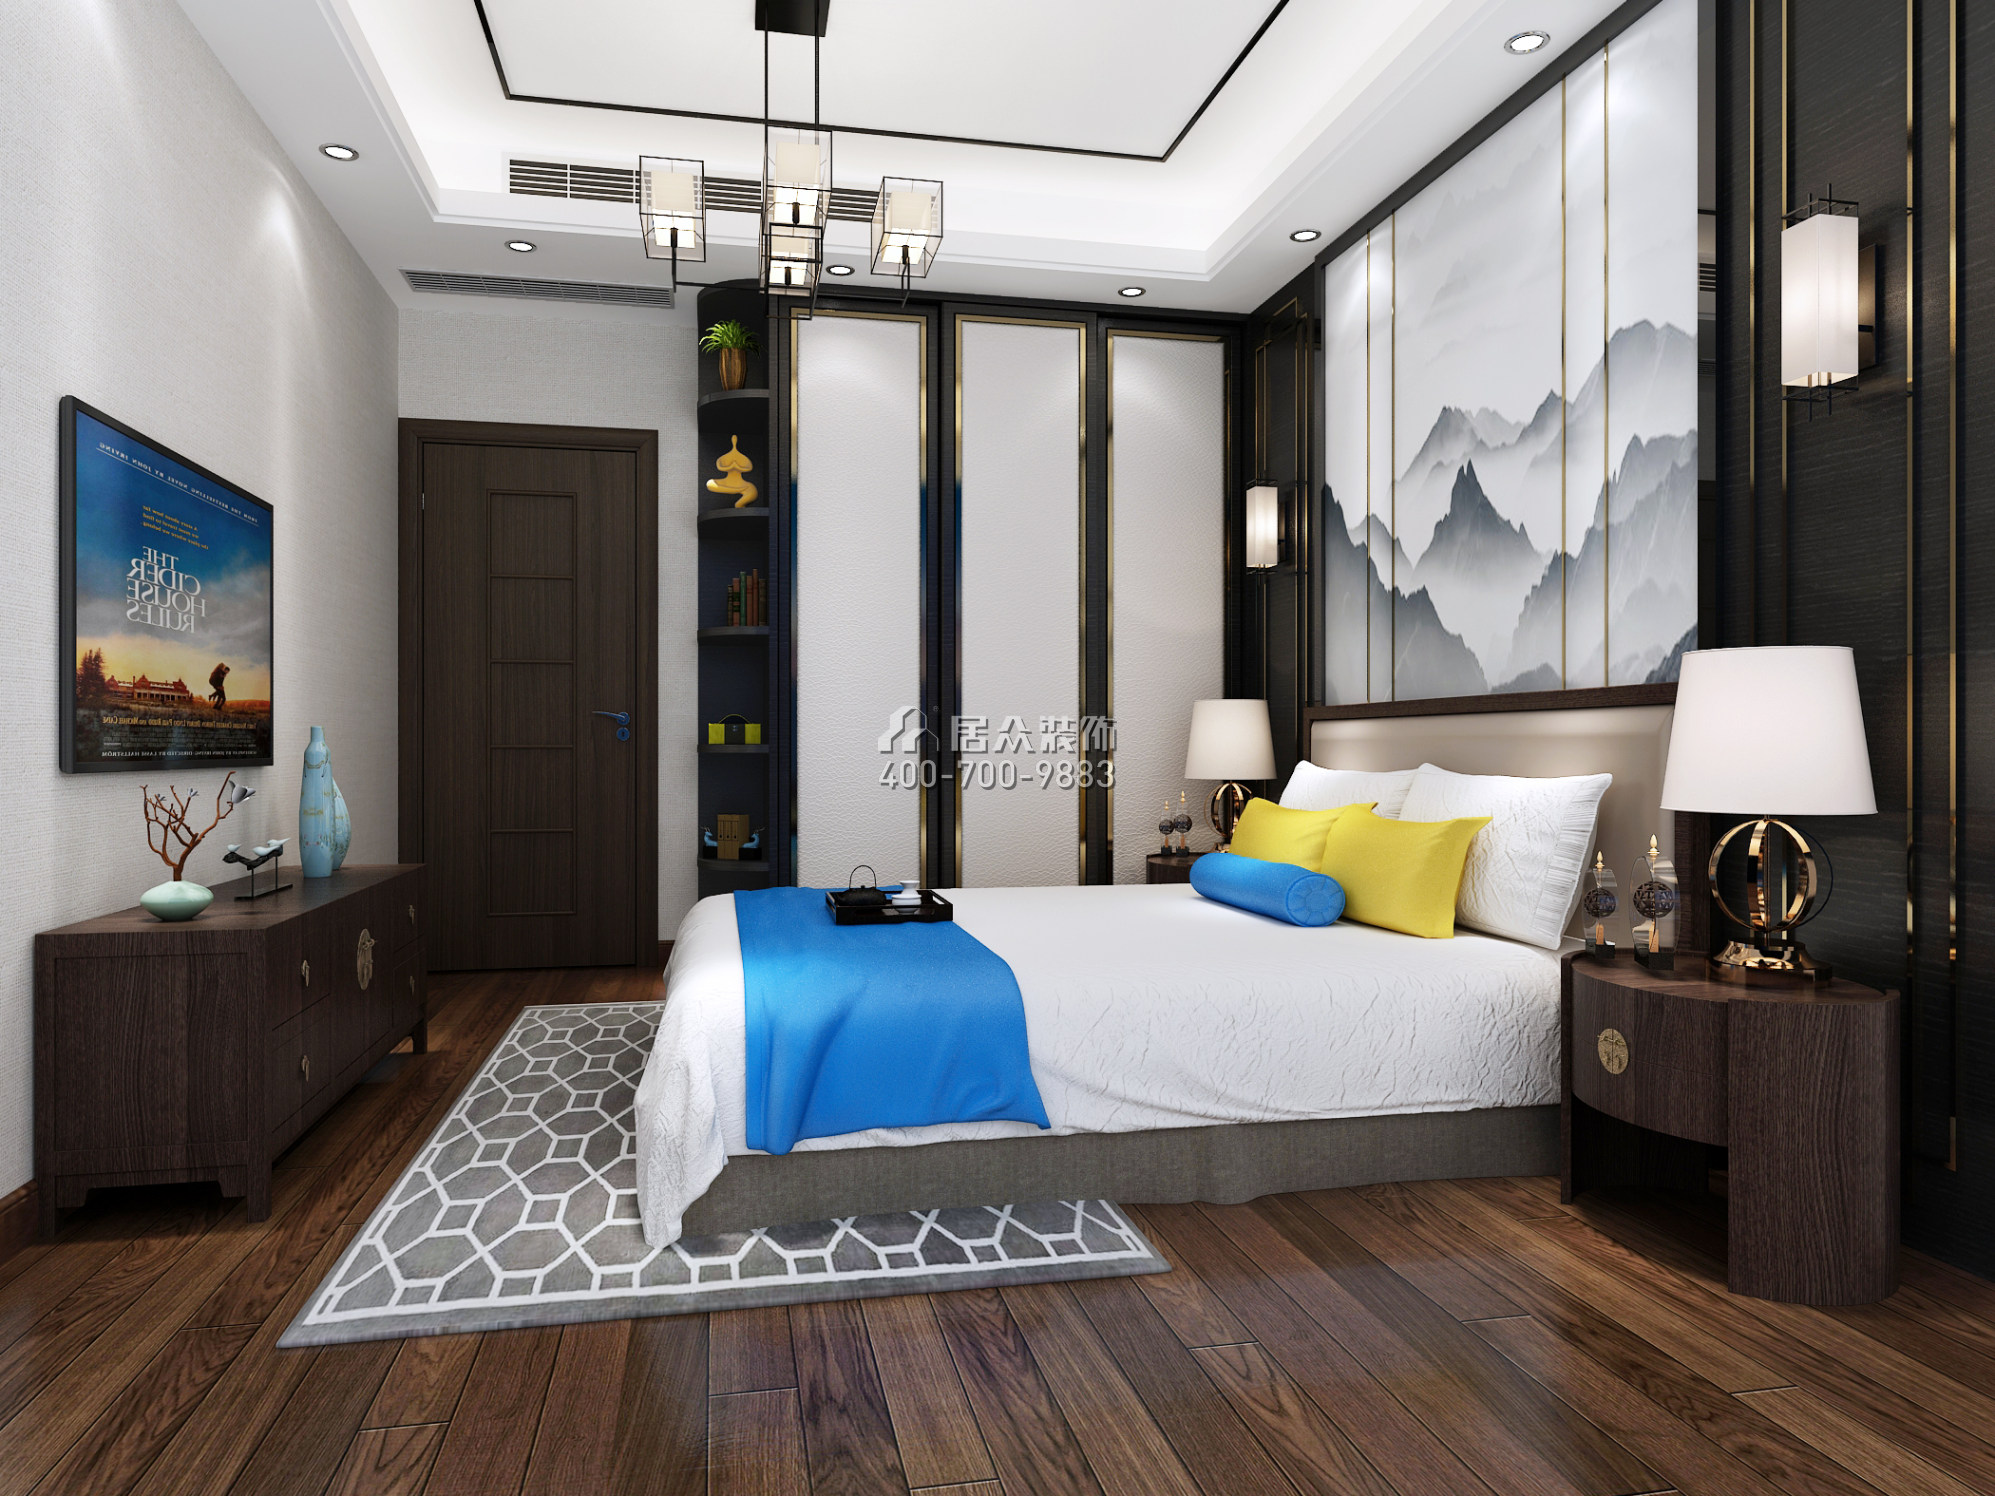 聯投東方華府二期89平方米中式風格平層戶型臥室裝修效果圖